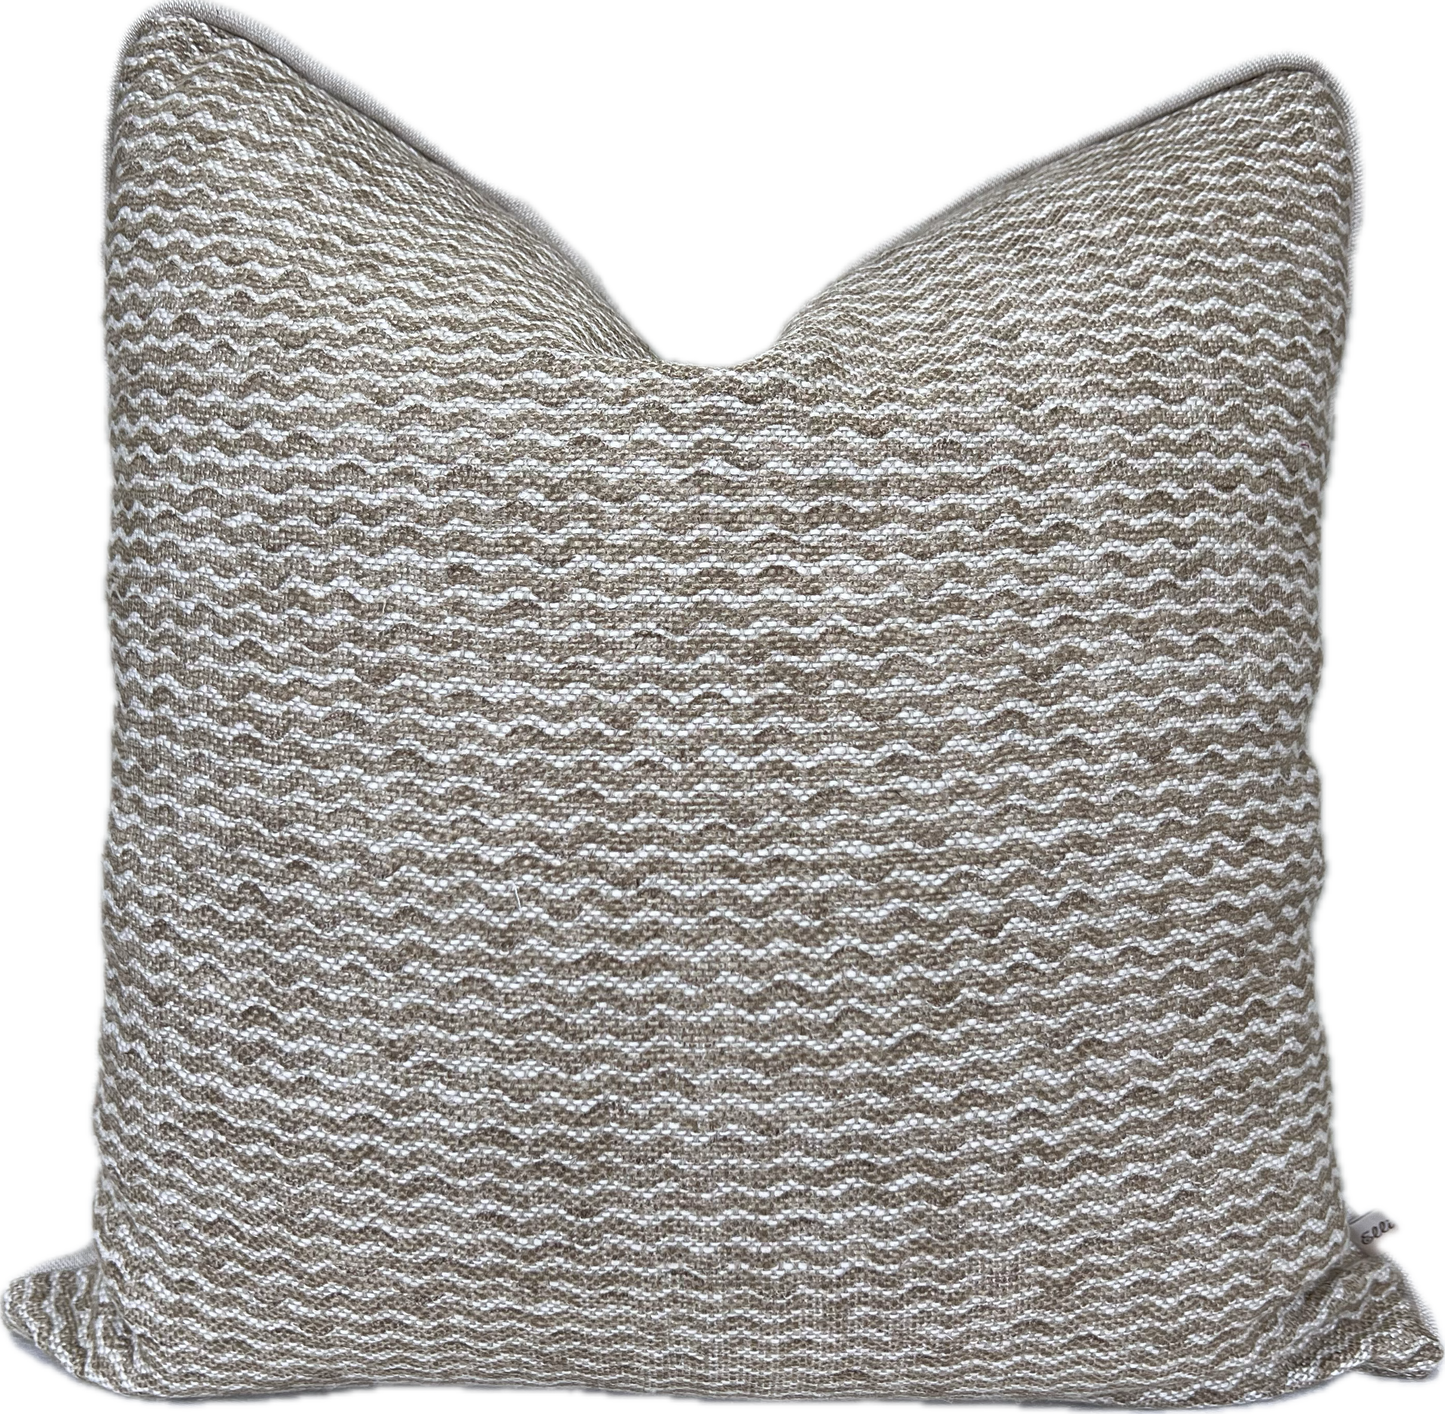 Fermoie Popple Luxury Designer Decorative Beige Neutral Linen Cushion Pillow Throw Cover